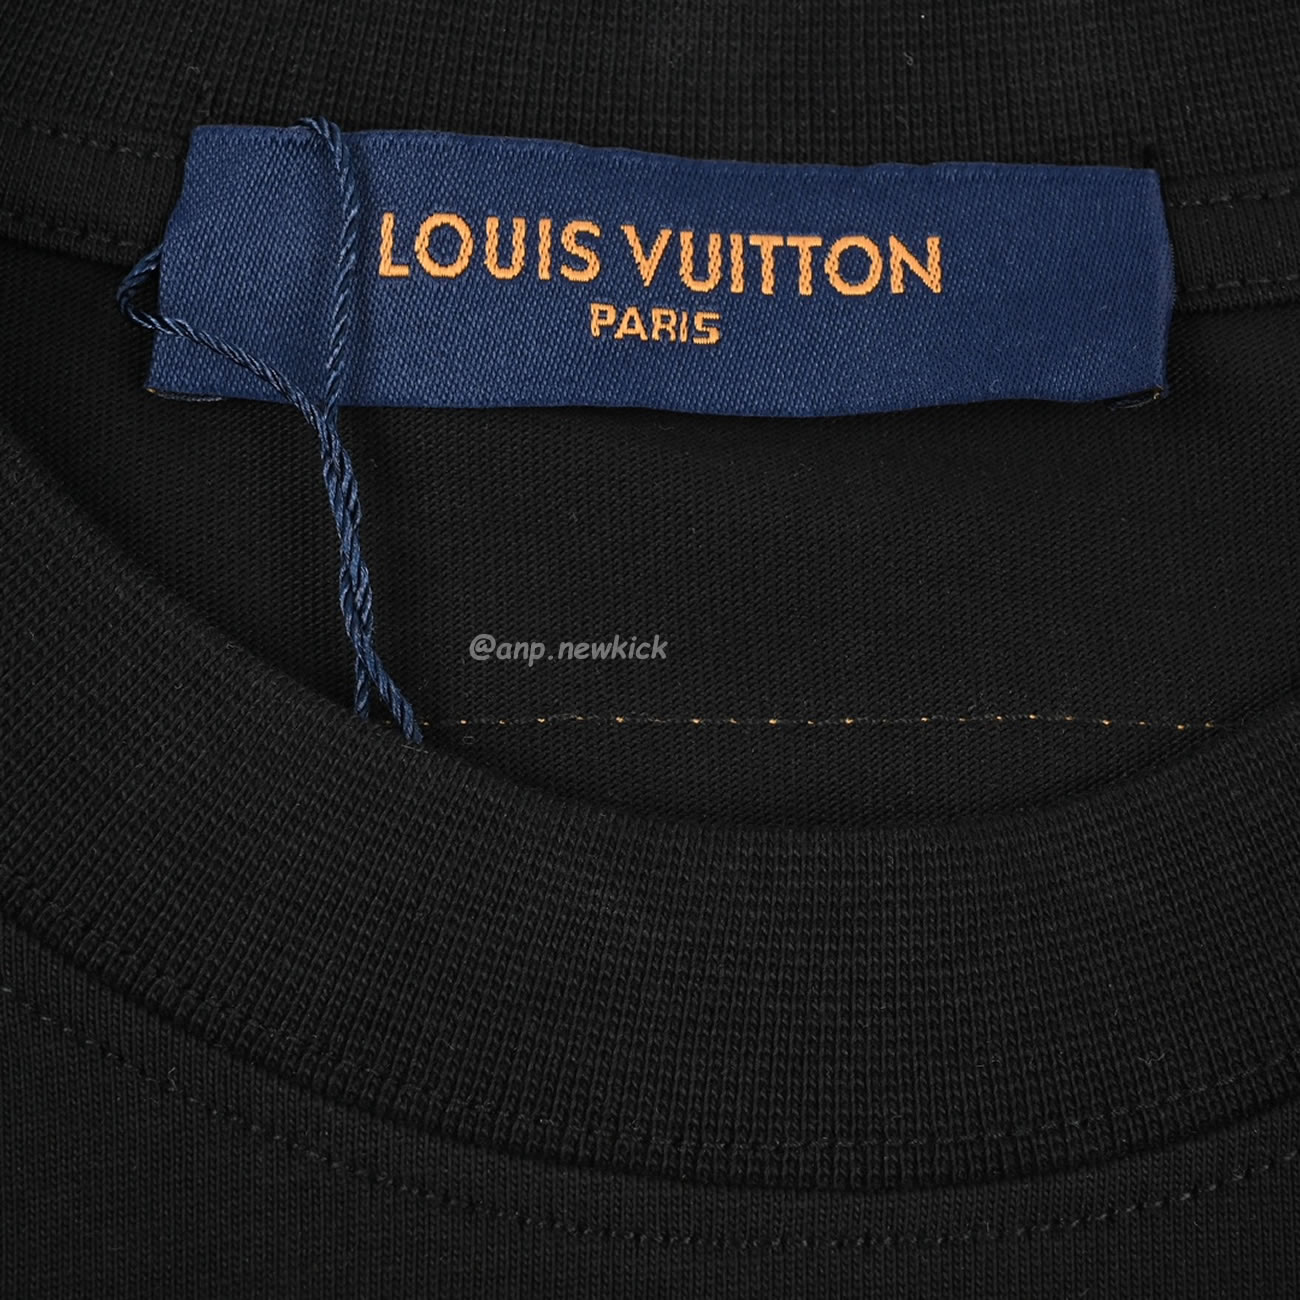 Louis Vuitton 24ss 3d Foam Printed Short Sleeves T Shirt (9) - newkick.org